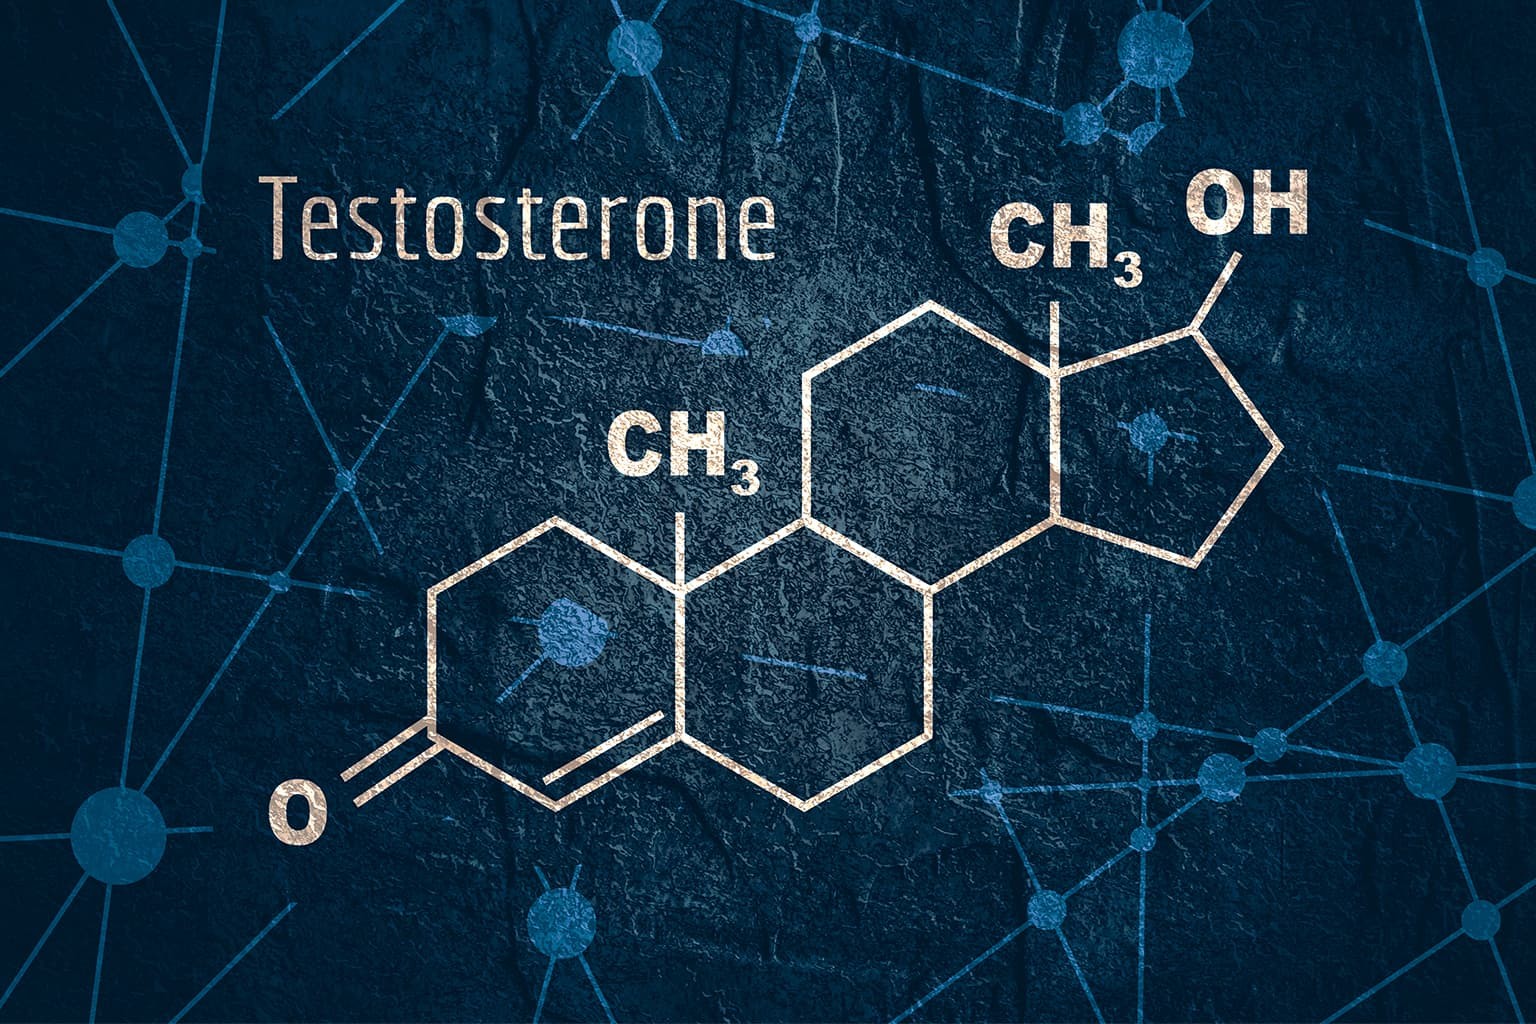 Suy giảm nồng độ testosterone là một trong những nguyên nhân khiến ham muốn của nam giới đi xuống